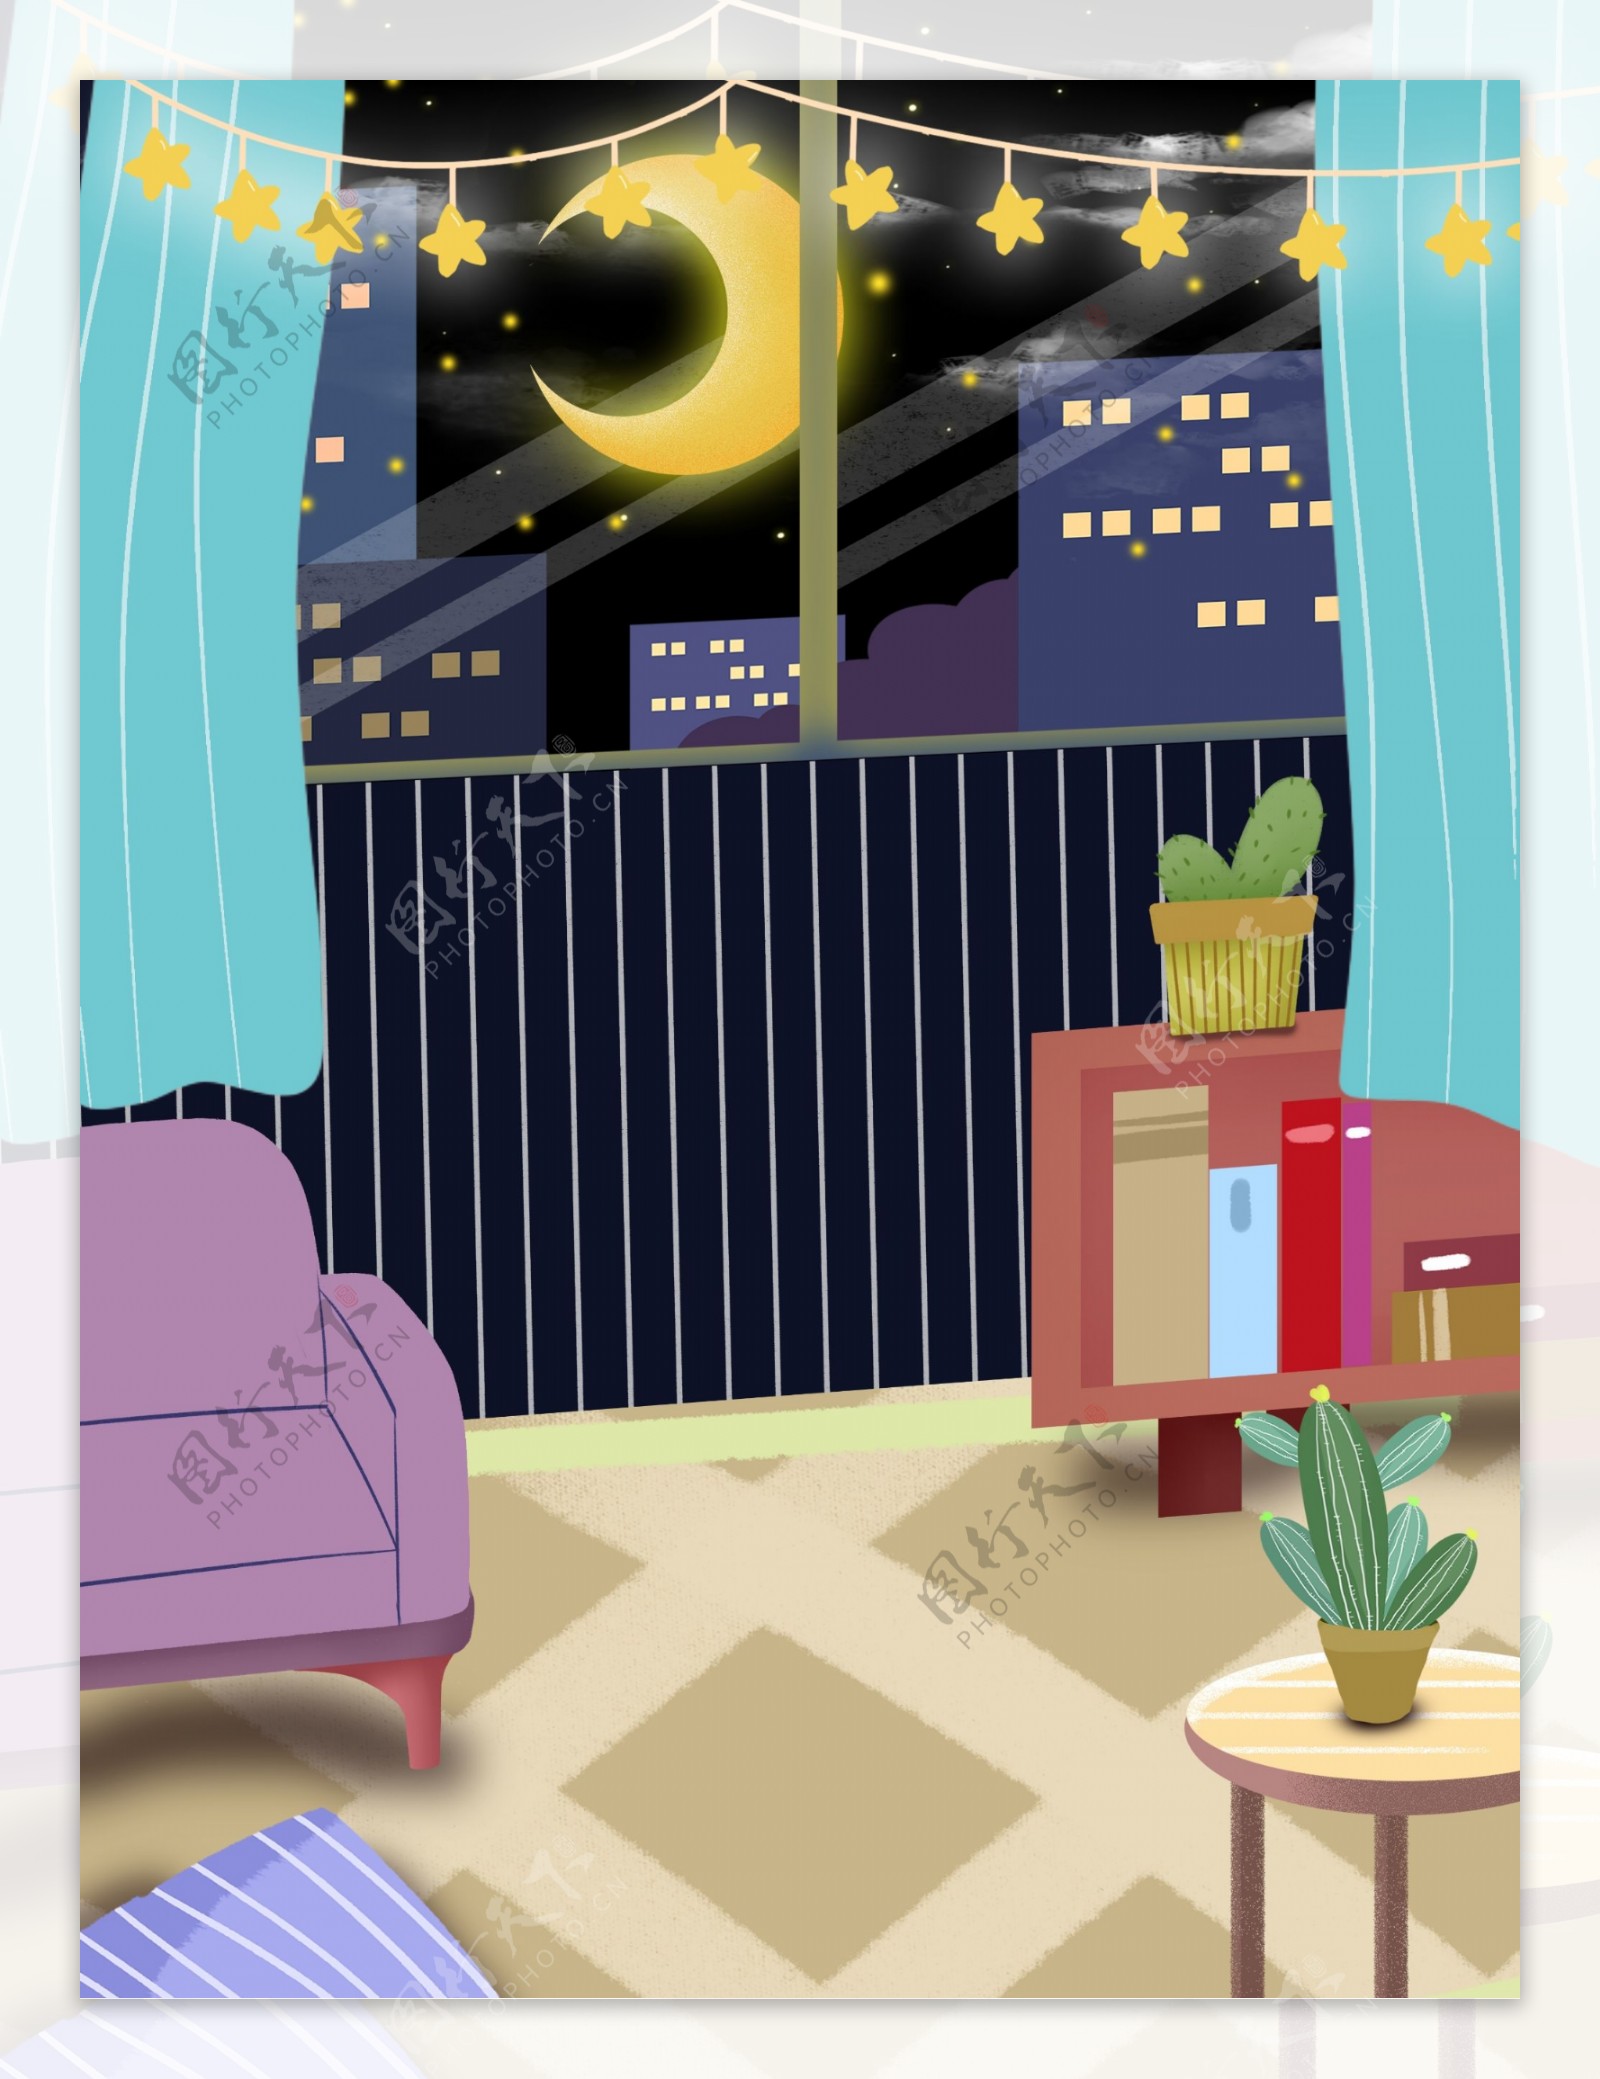 晚安世界可爱卡通卧室居家插画背景